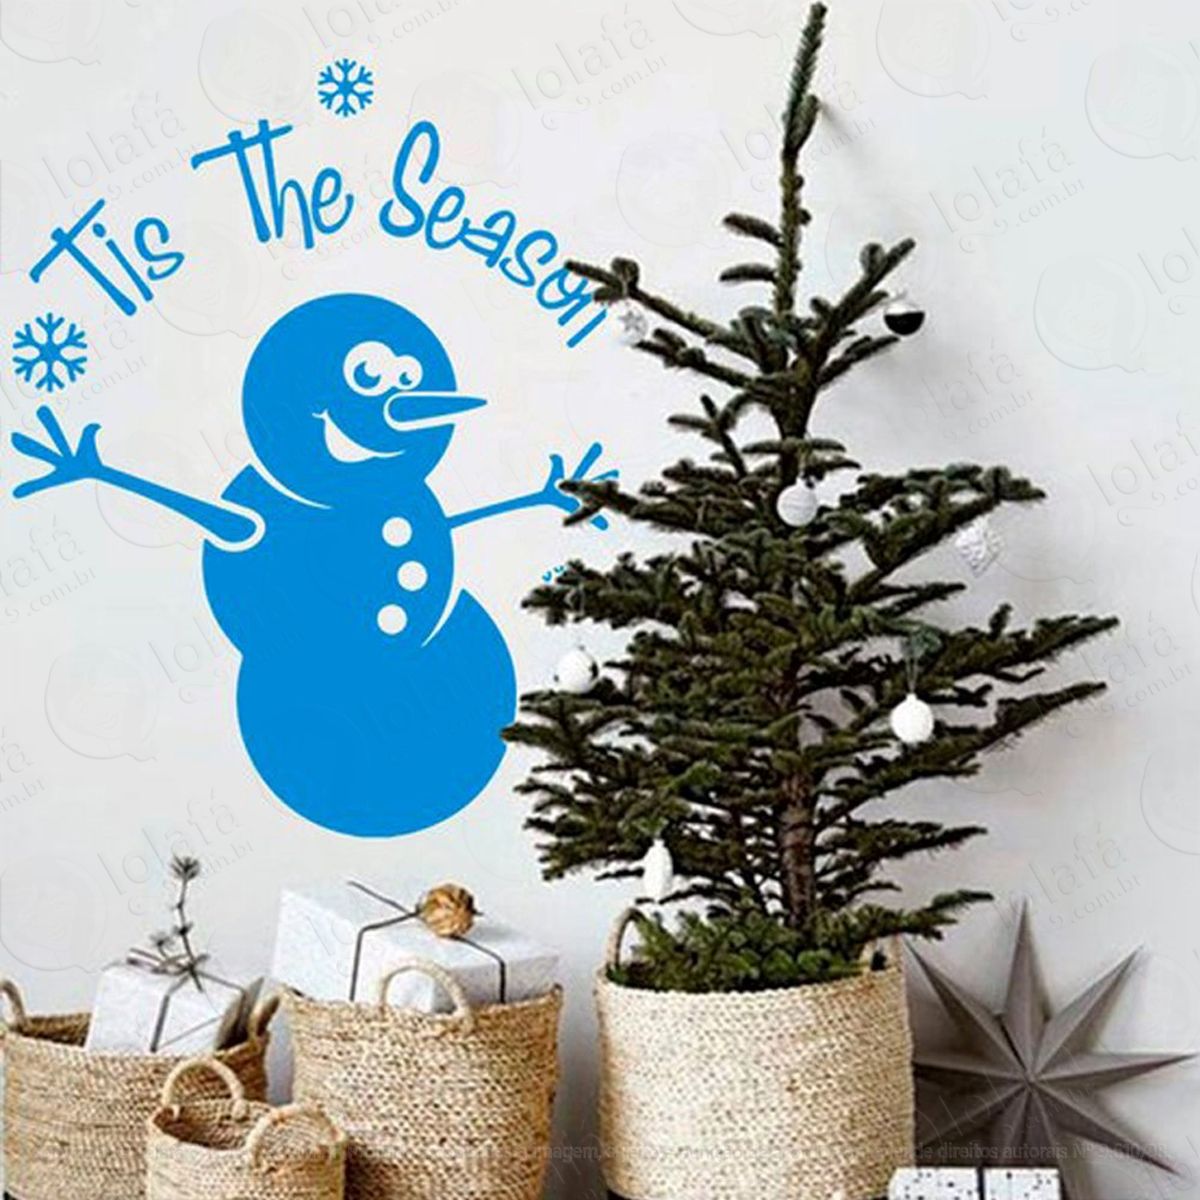 snowman adesivo de natal para vitrine, parede, porta de vidro - decoração natalina mod:249